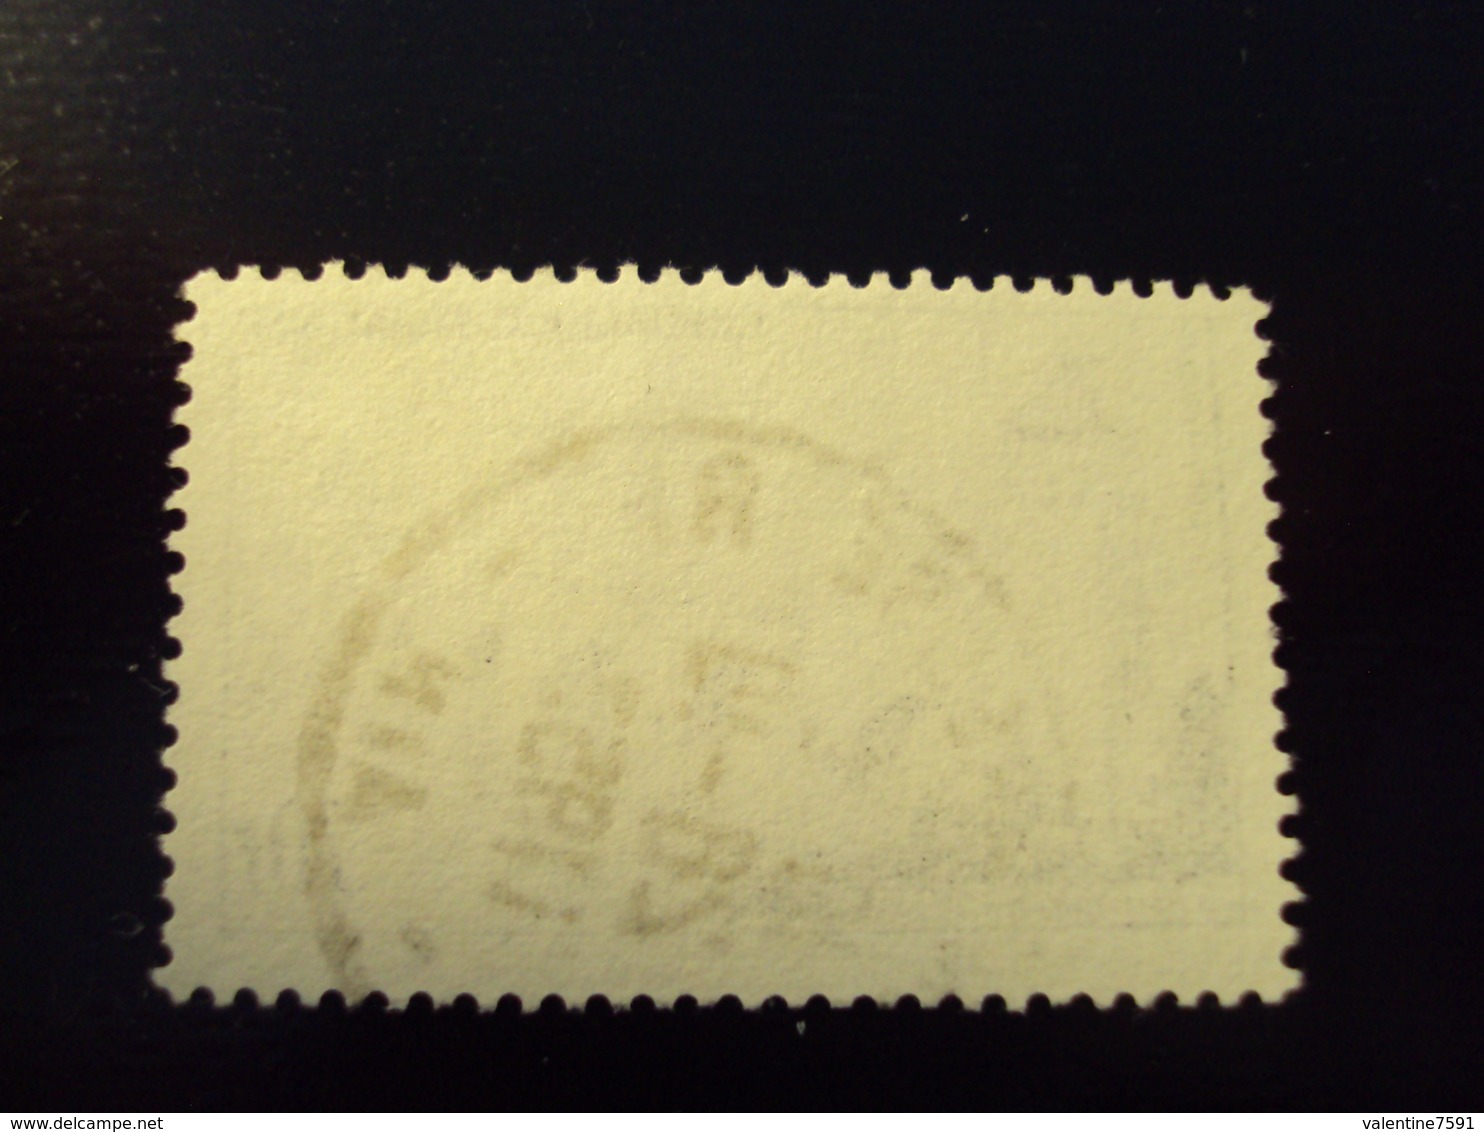 1957    -timbre Oblitéré N° 1119     " Pont Valentré Cahors      "        Net 1 - Used Stamps